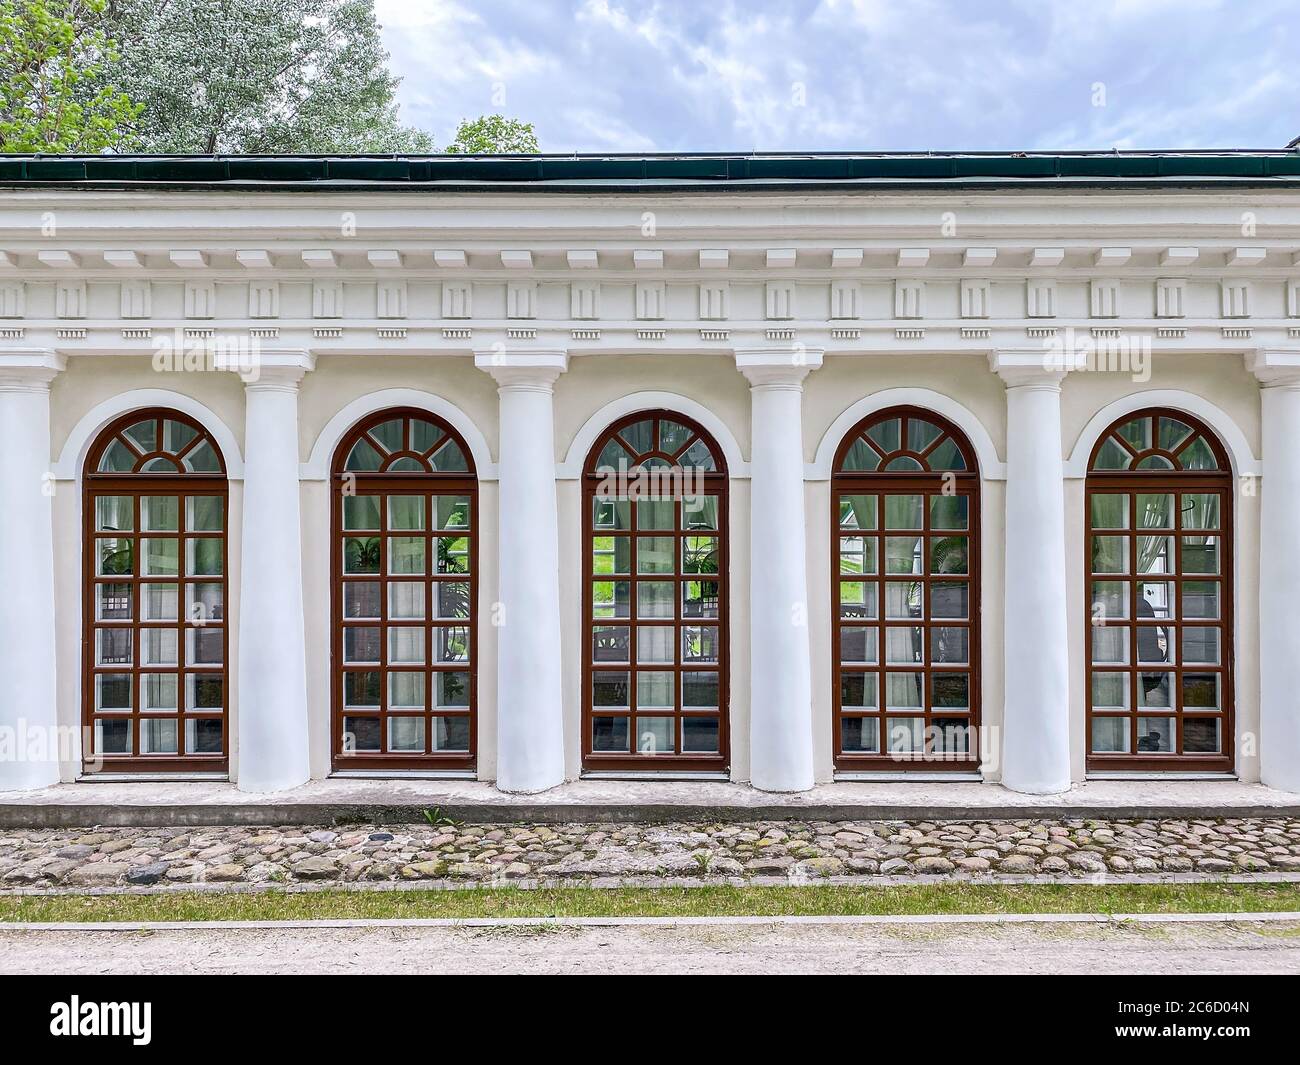 edificio classico in stile rinascimentale, con grandi finestre arrotondate e colonne architettoniche Foto Stock